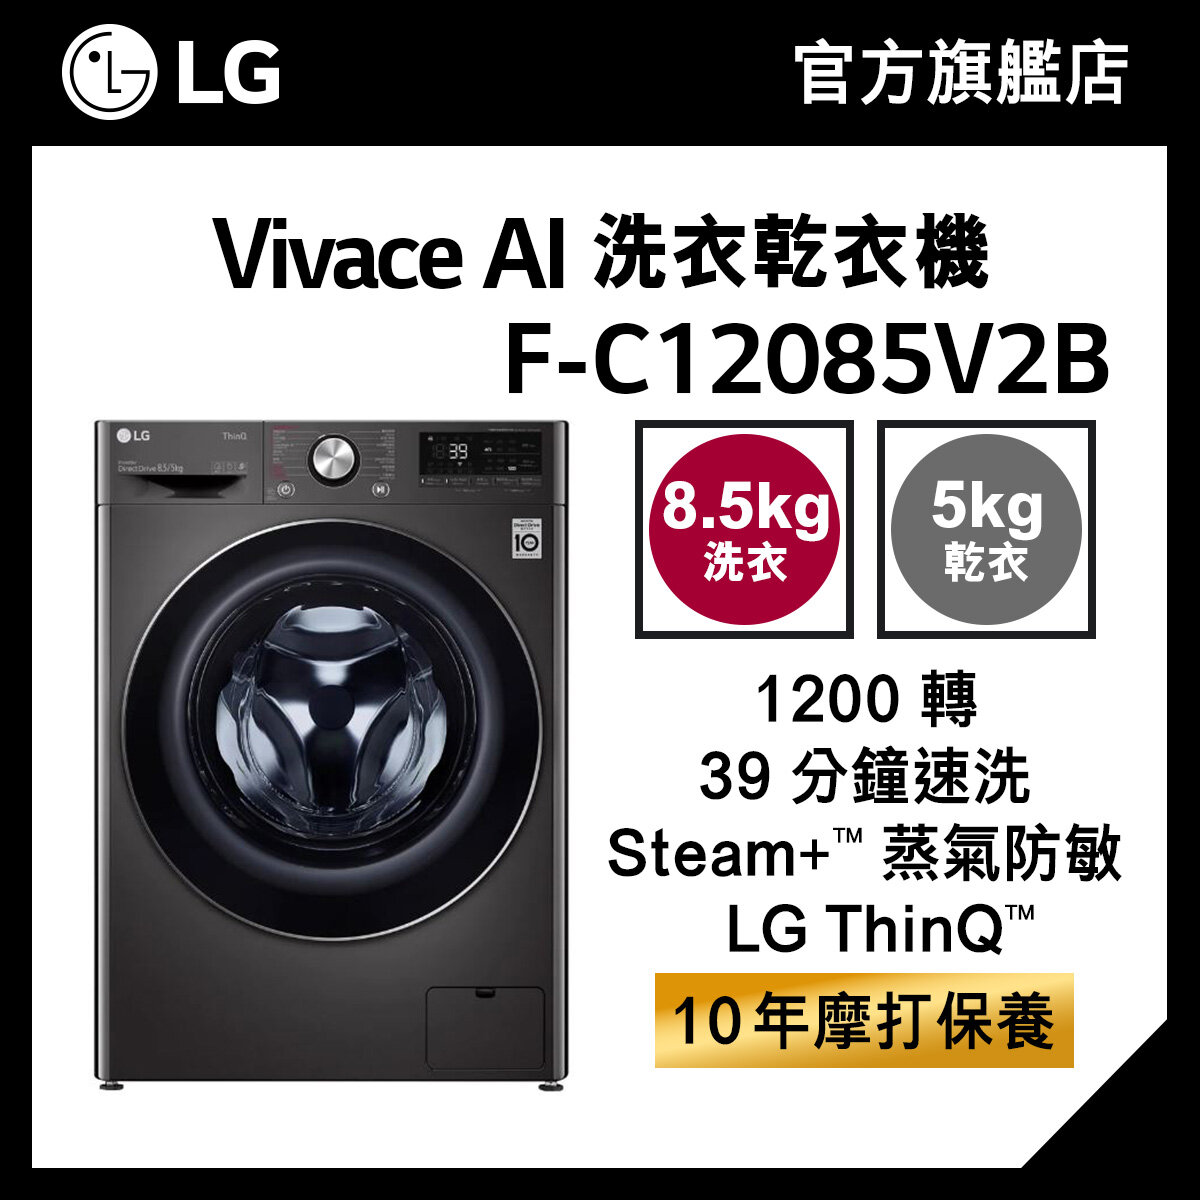 LG Vivace 8.5KG 1200 轉 AI 洗衣乾衣機 (蒸氣防敏, 39 分鐘速洗) F-C12085V2B